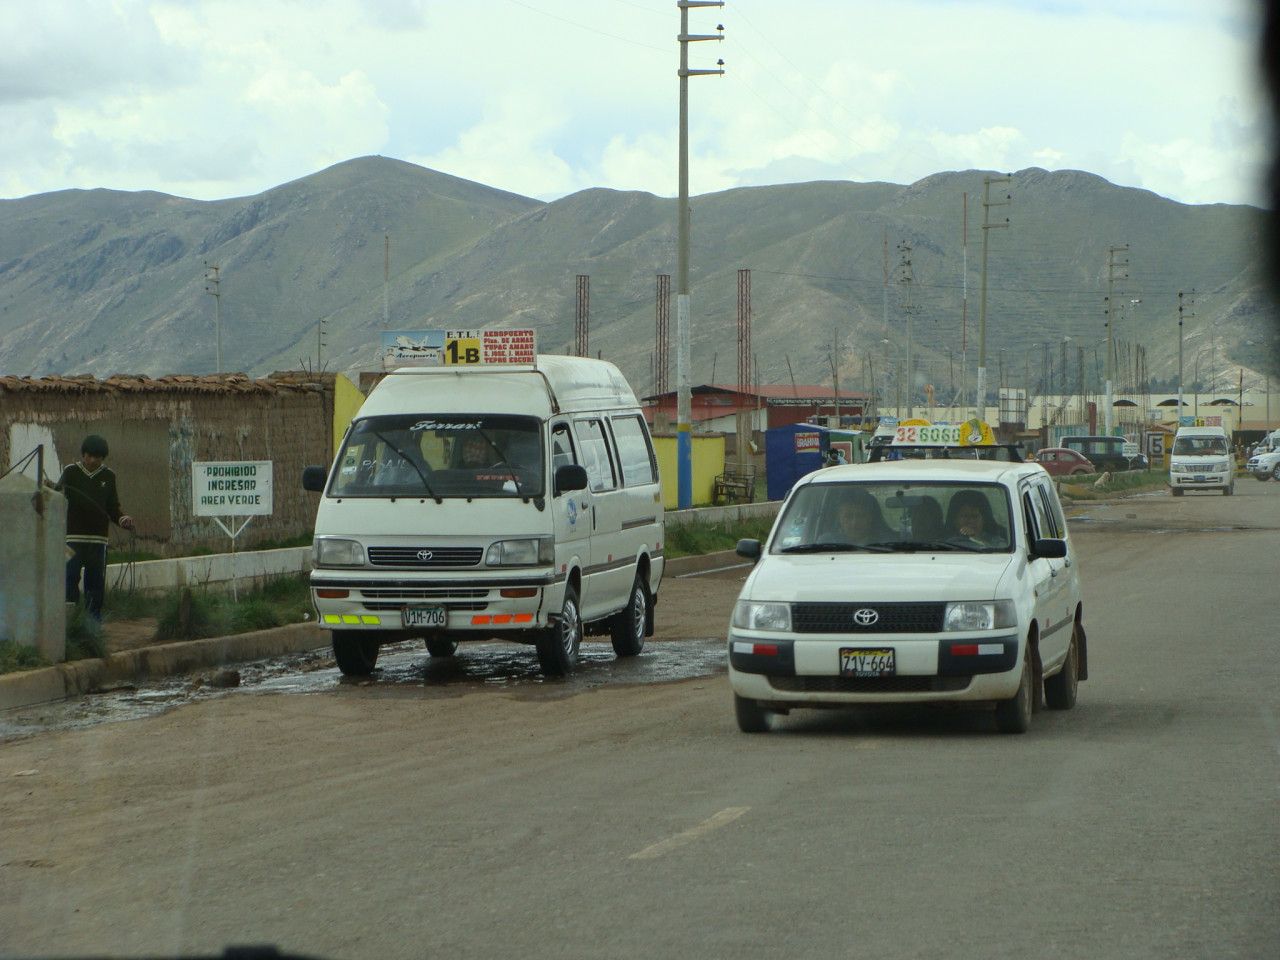 Peru - MHD v Juliace v roce 2011